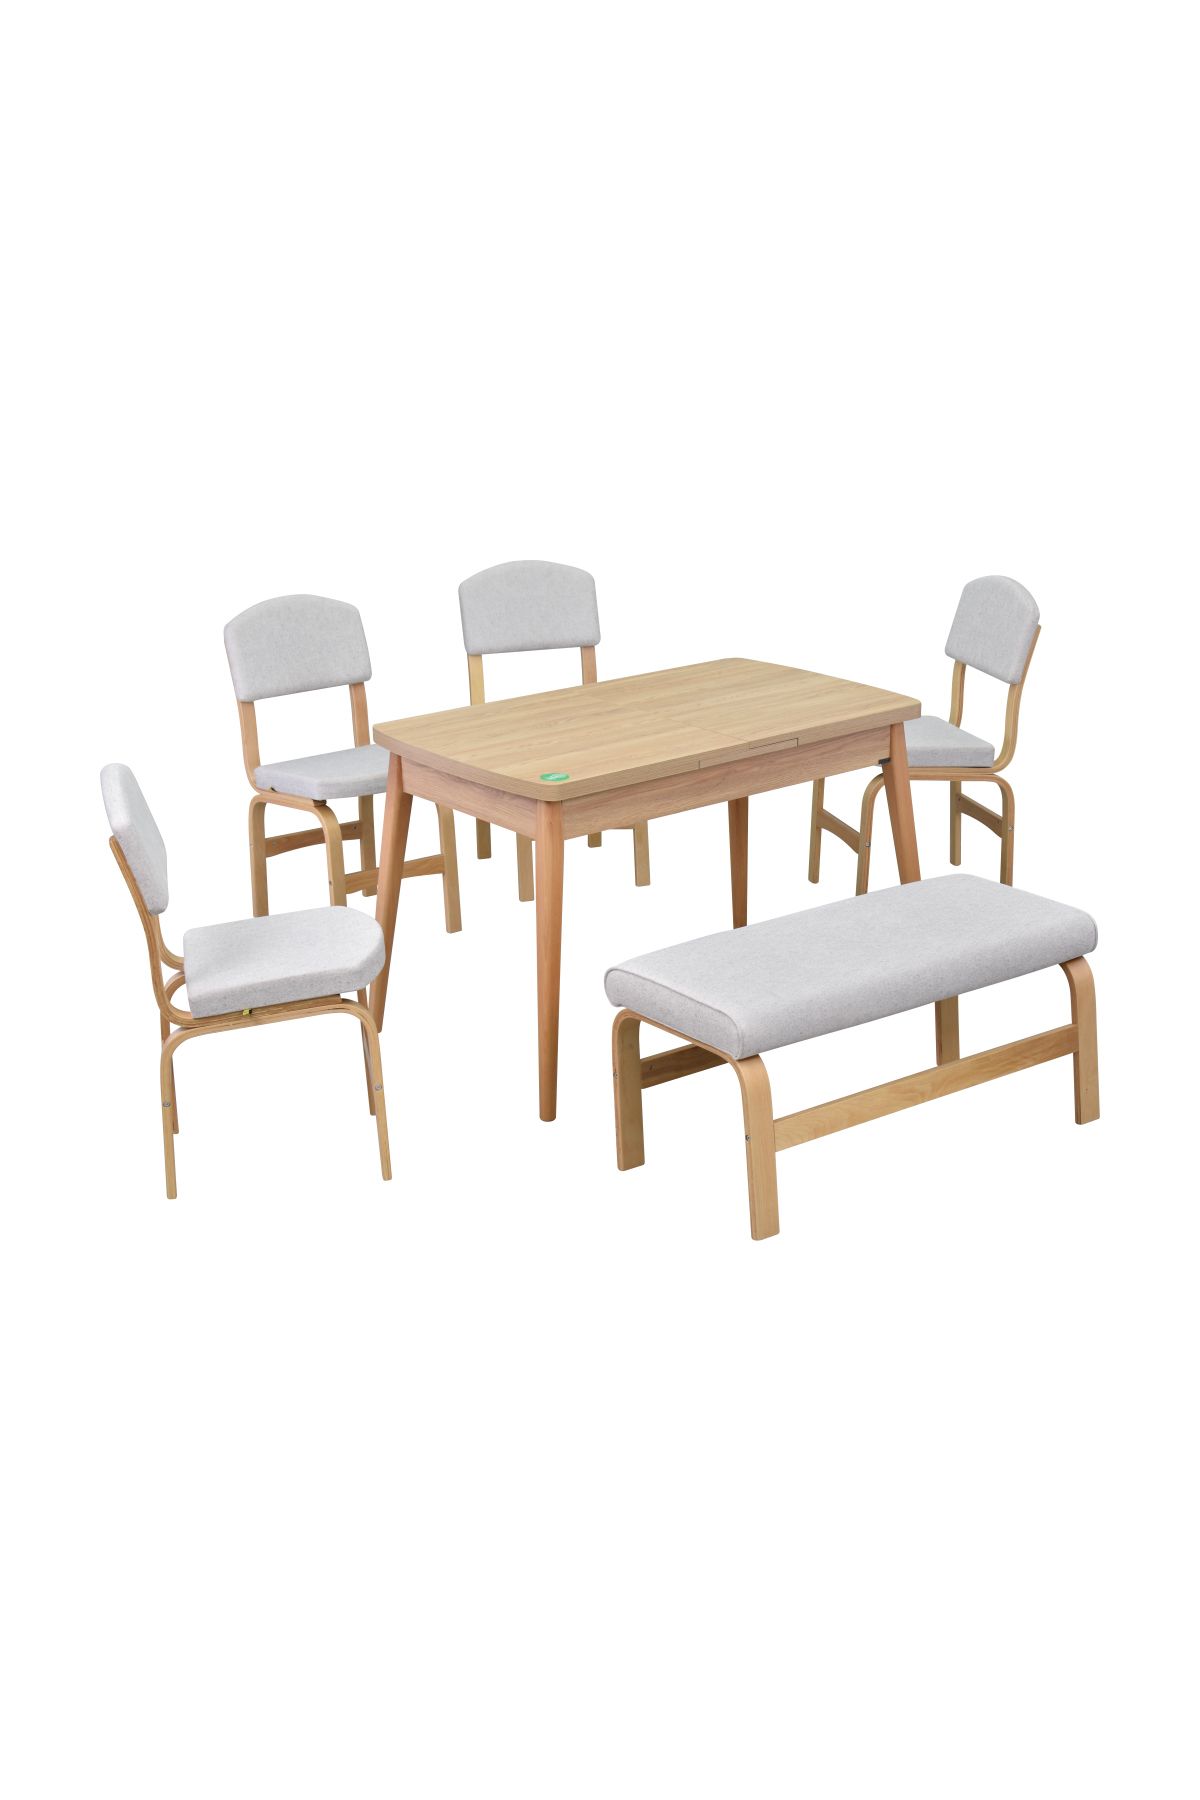 VİLİNZE Ege Sandalye-Bank Avanos Ahşap MDF Açılır Mutfak Masası Takımı - 70x120+30 cm